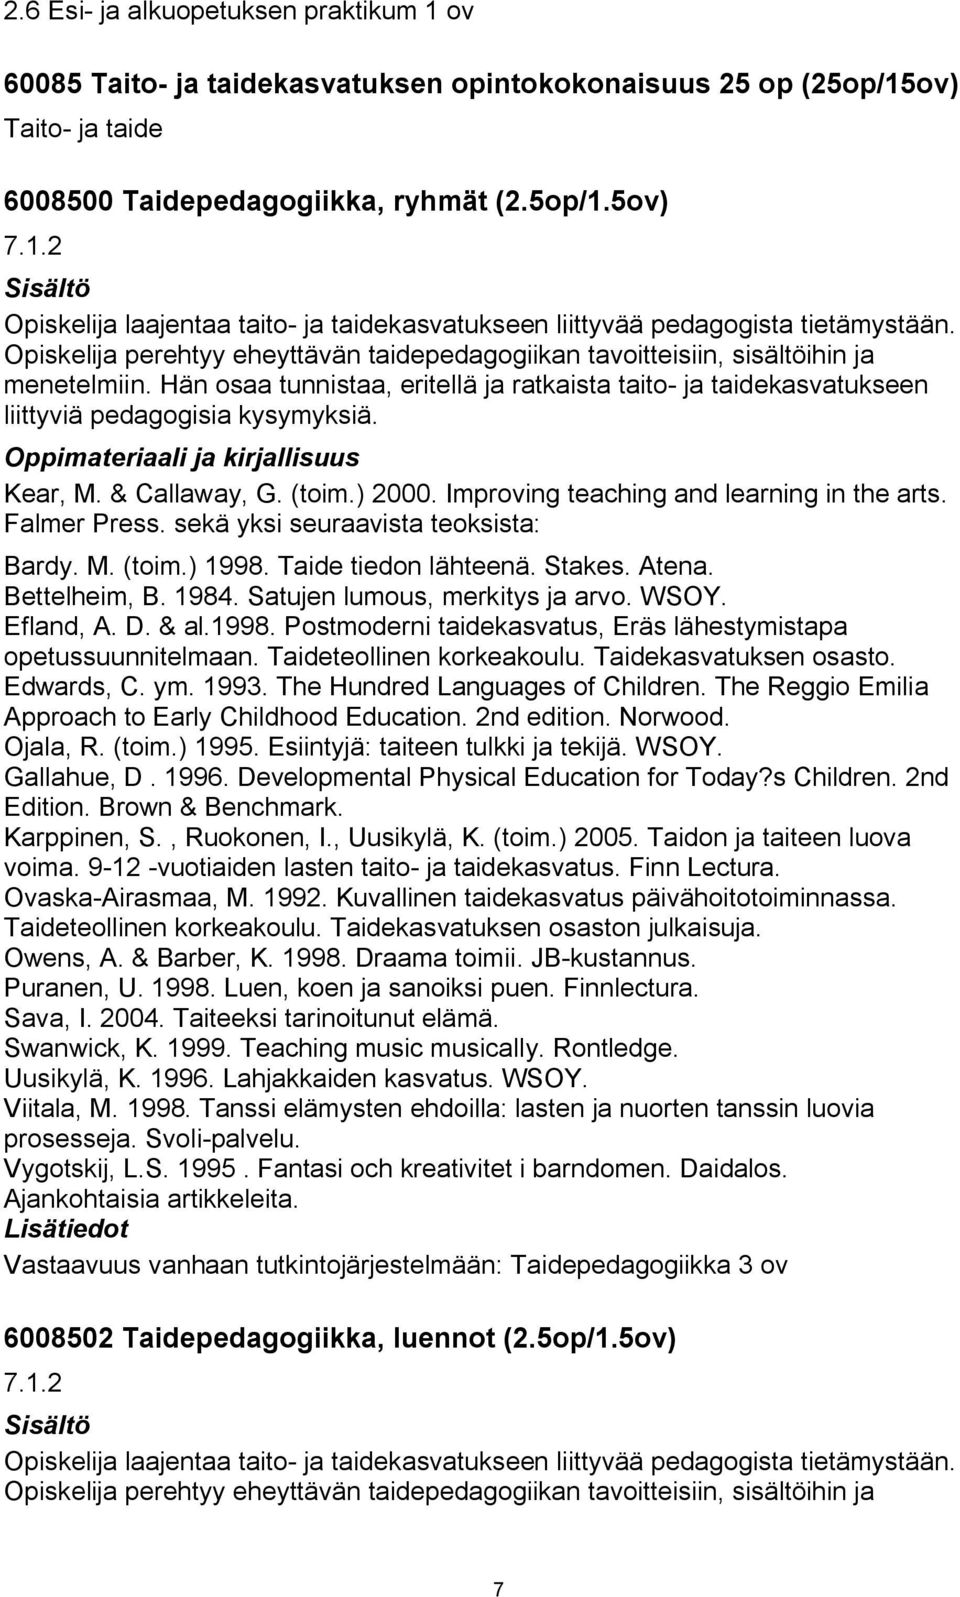 Kear, M. & Callaway, G. (toim.) 2000. Improving teaching and learning in the arts. Falmer Press. sekä yksi seuraavista teoksista: Bardy. M. (toim.) 1998. Taide tiedon lähteenä. Stakes. Atena.